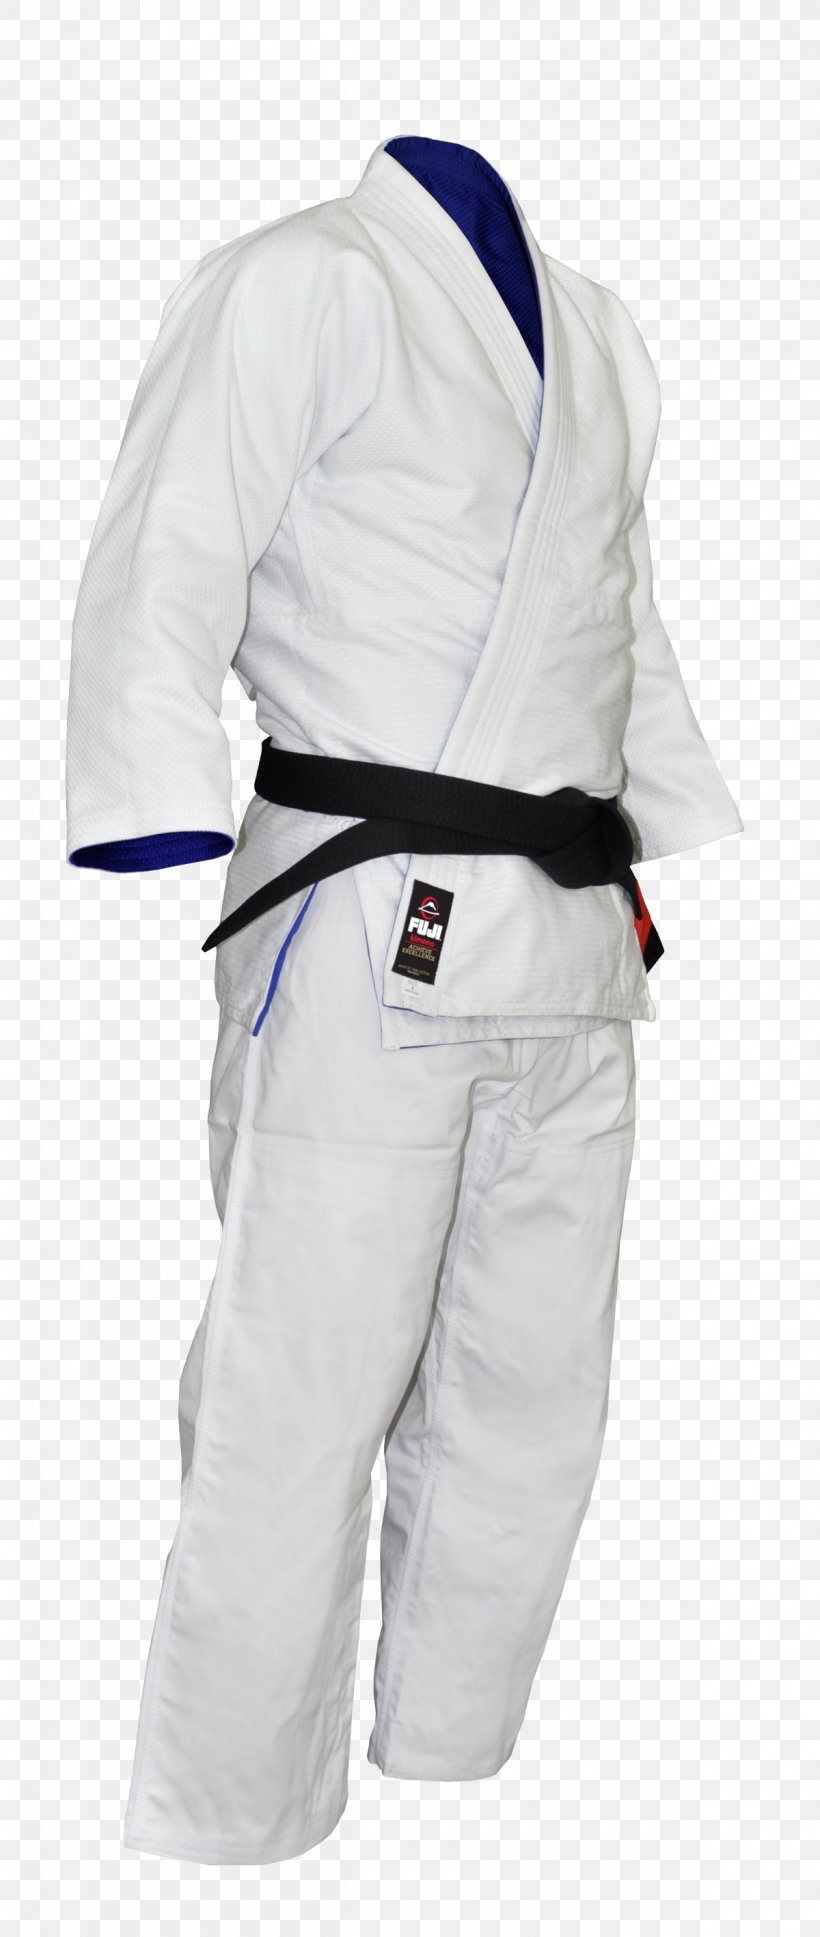 Brazilian Jiu-jitsu Gi Judogi Karate Gi Mixed Martial Arts, PNG, 1200x2836px, Brazilian Jiujitsu Gi, Arm, Black, Blue, Brazilian Jiujitsu Download Free